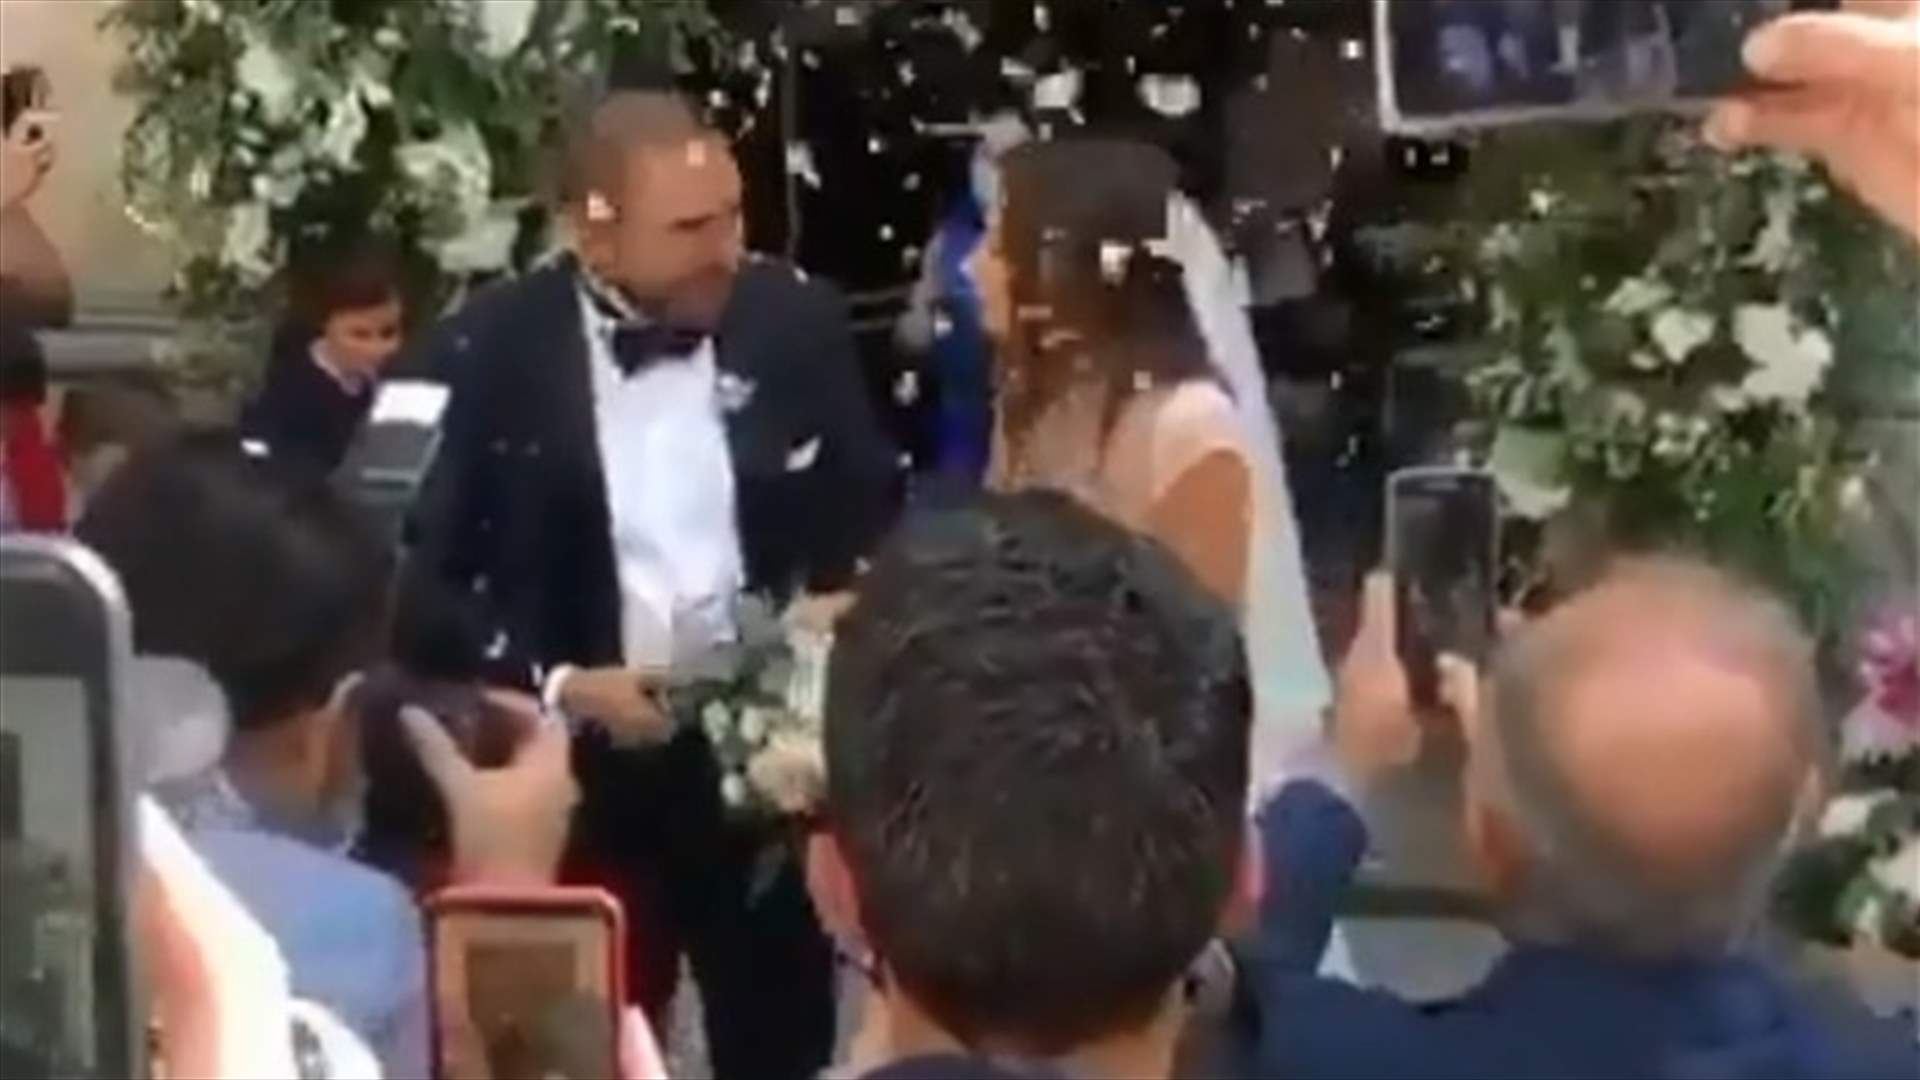 بعد زواجها مدنيّاً.. هبة طوجي عروس في الكنيسة وترقص بفستانها الأبيض (فيديو)